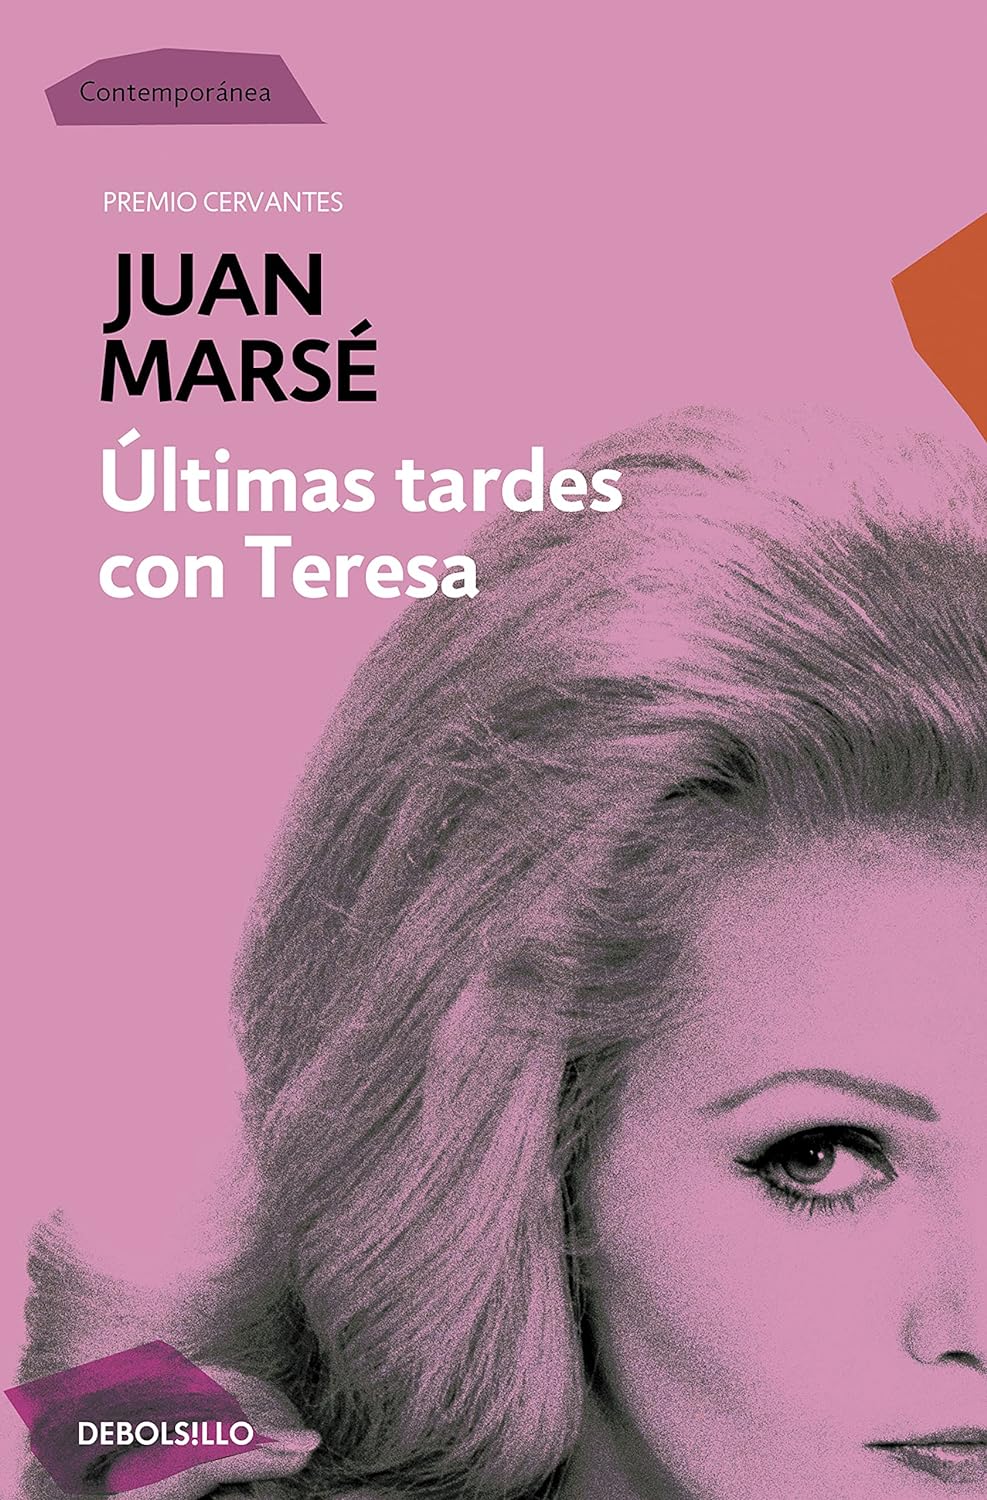 Marse J. - Ultimas tardes con Teresa